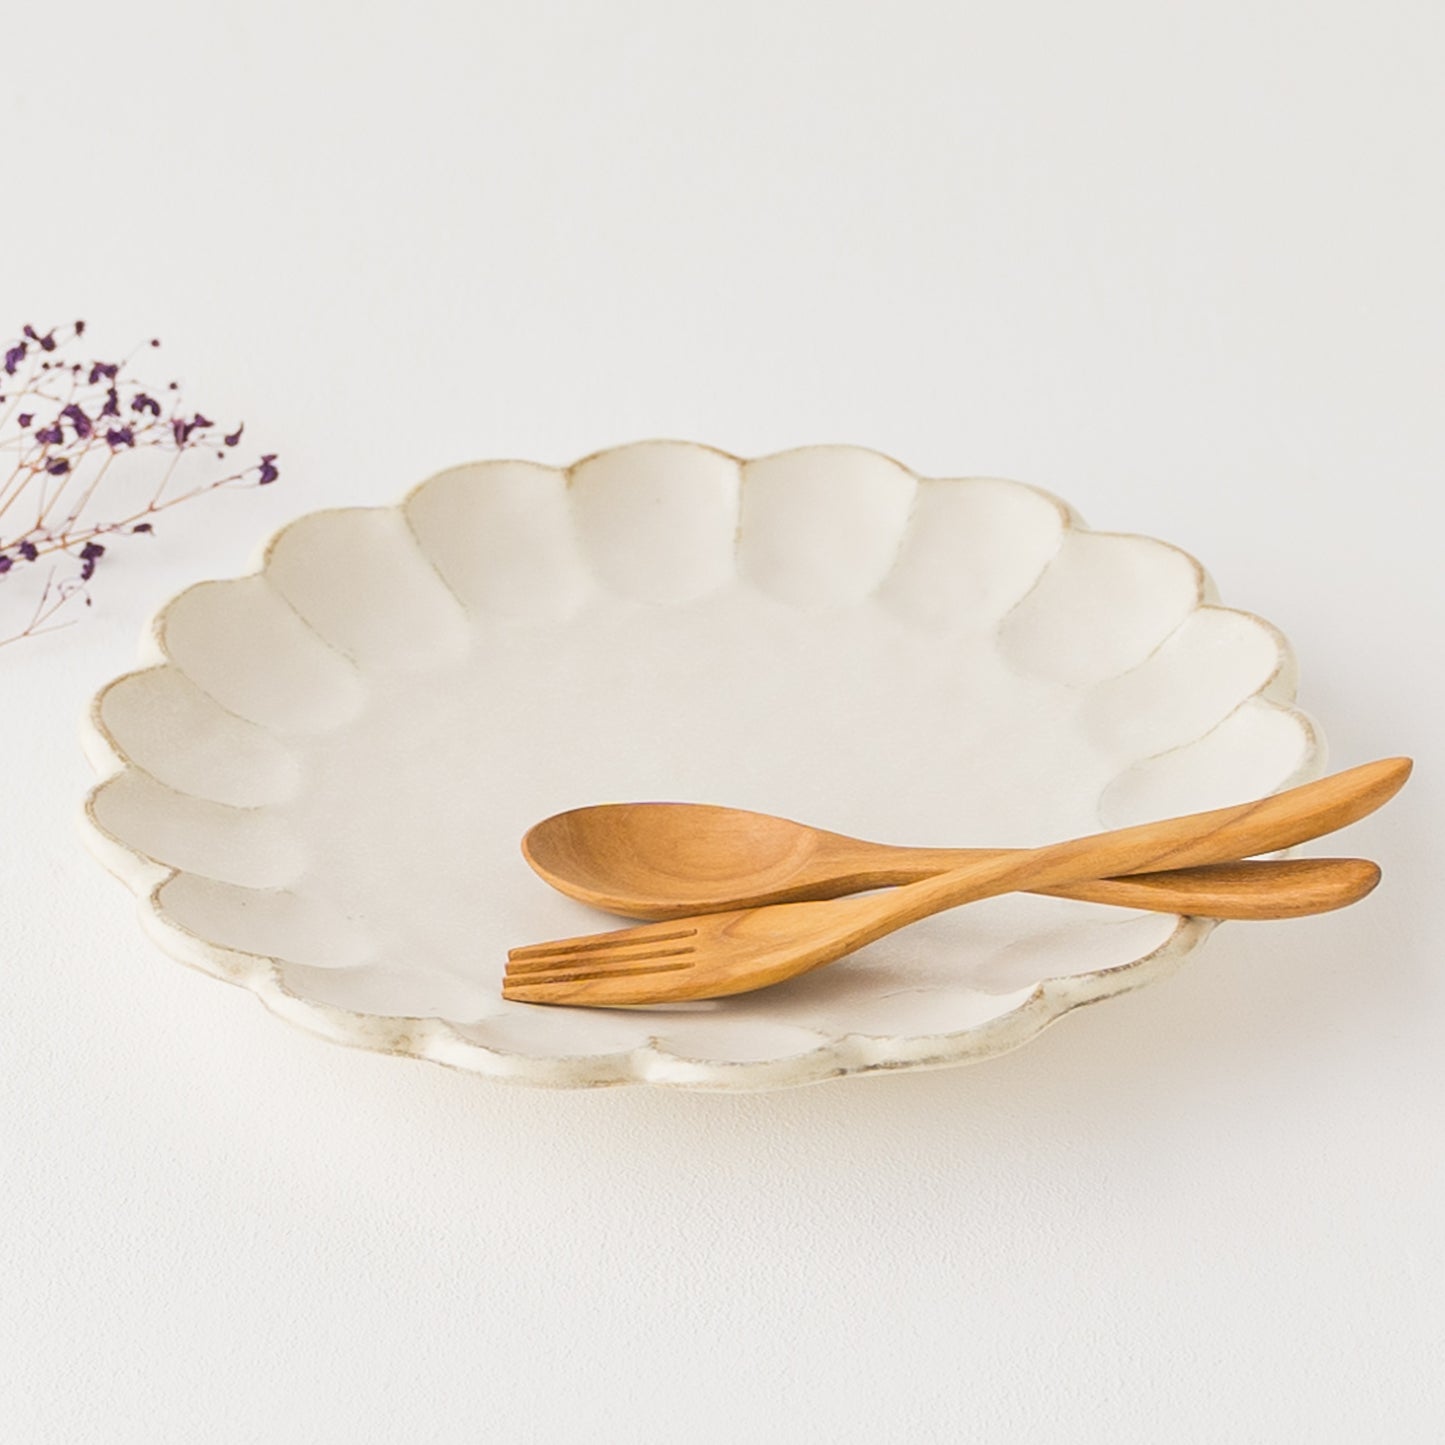 カレーにぴったり合う美濃焼の輪花ワンプレート皿